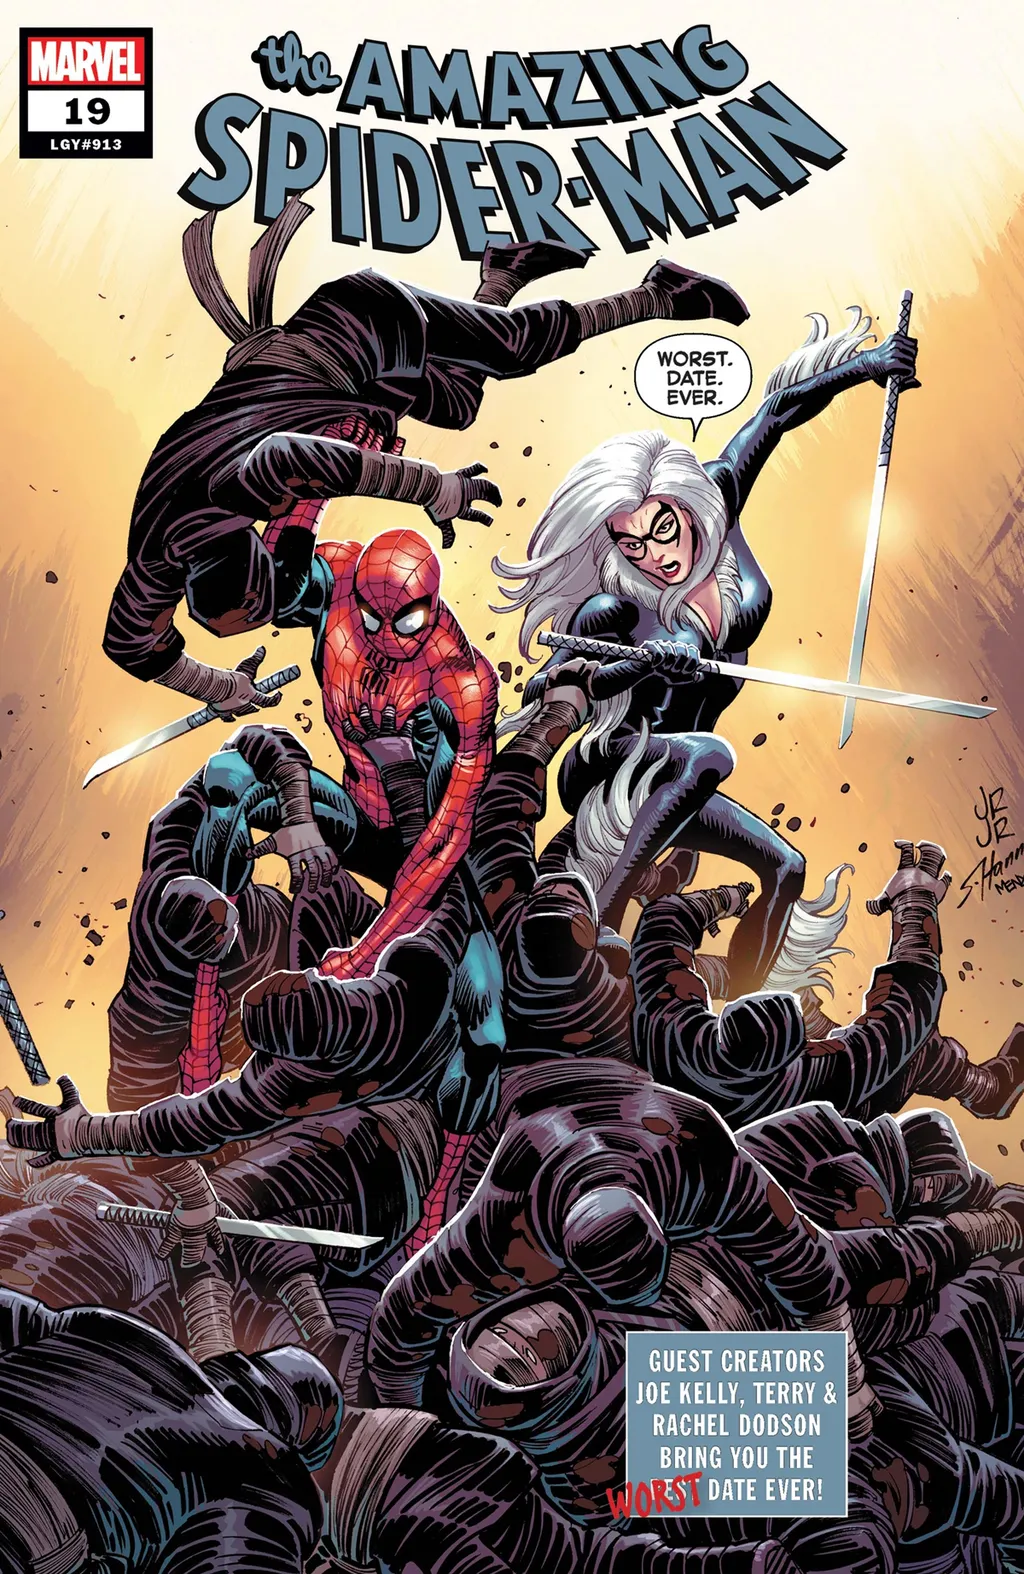 Resposta sobre os atiradores de teia do Homem-Aranha vieram em Amazing Spider-Man #19, lançado na semana passada (Imagem: Reprodução/Marvel Comics)